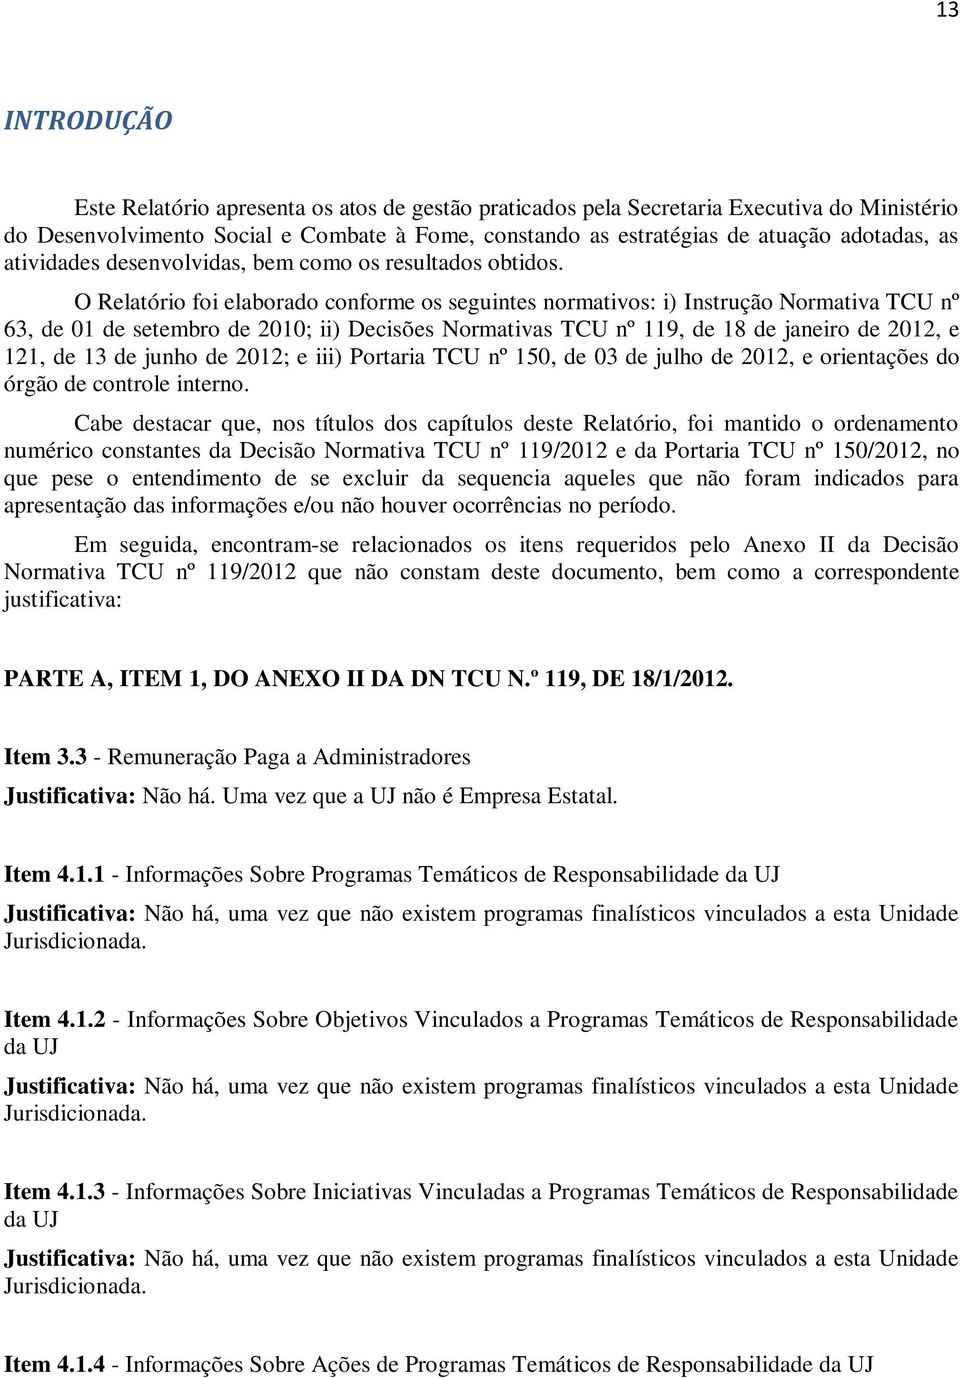 O Relatório foi elaborado conforme os seguintes normativos: i) Instrução Normativa TCU nº 63, de 01 de setembro de 2010; ii) Decisões Normativas TCU nº 119, de 18 de janeiro de 2012, e 121, de 13 de